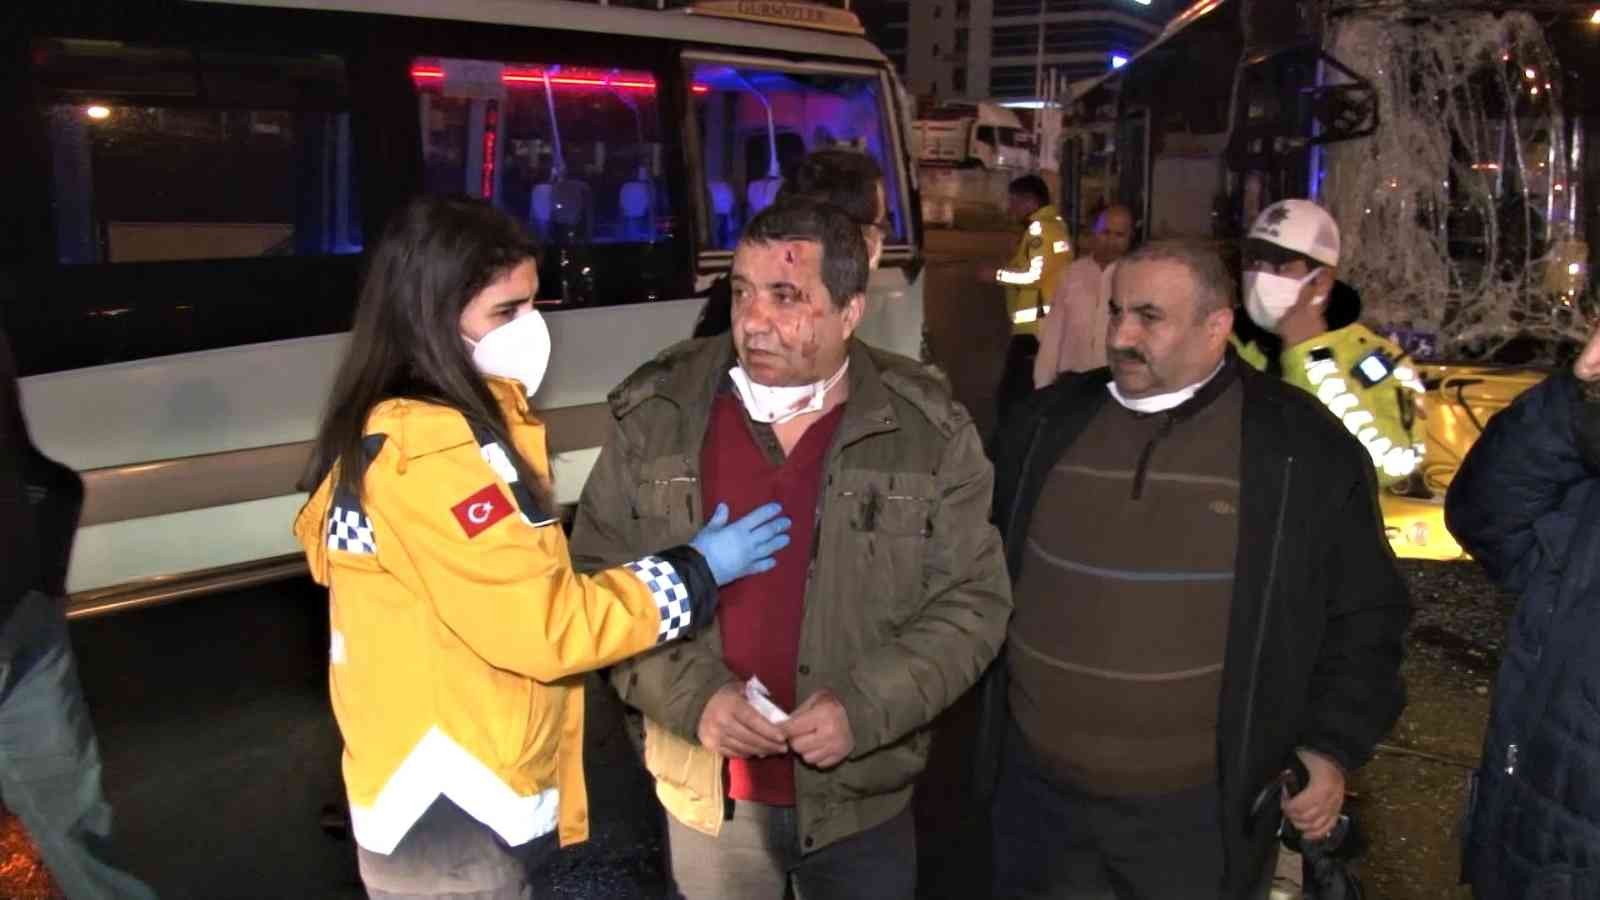 Maltepe’de İETT otobüsü yolcu bekleyen minibüse çarptı: 5 yaralı #istanbul